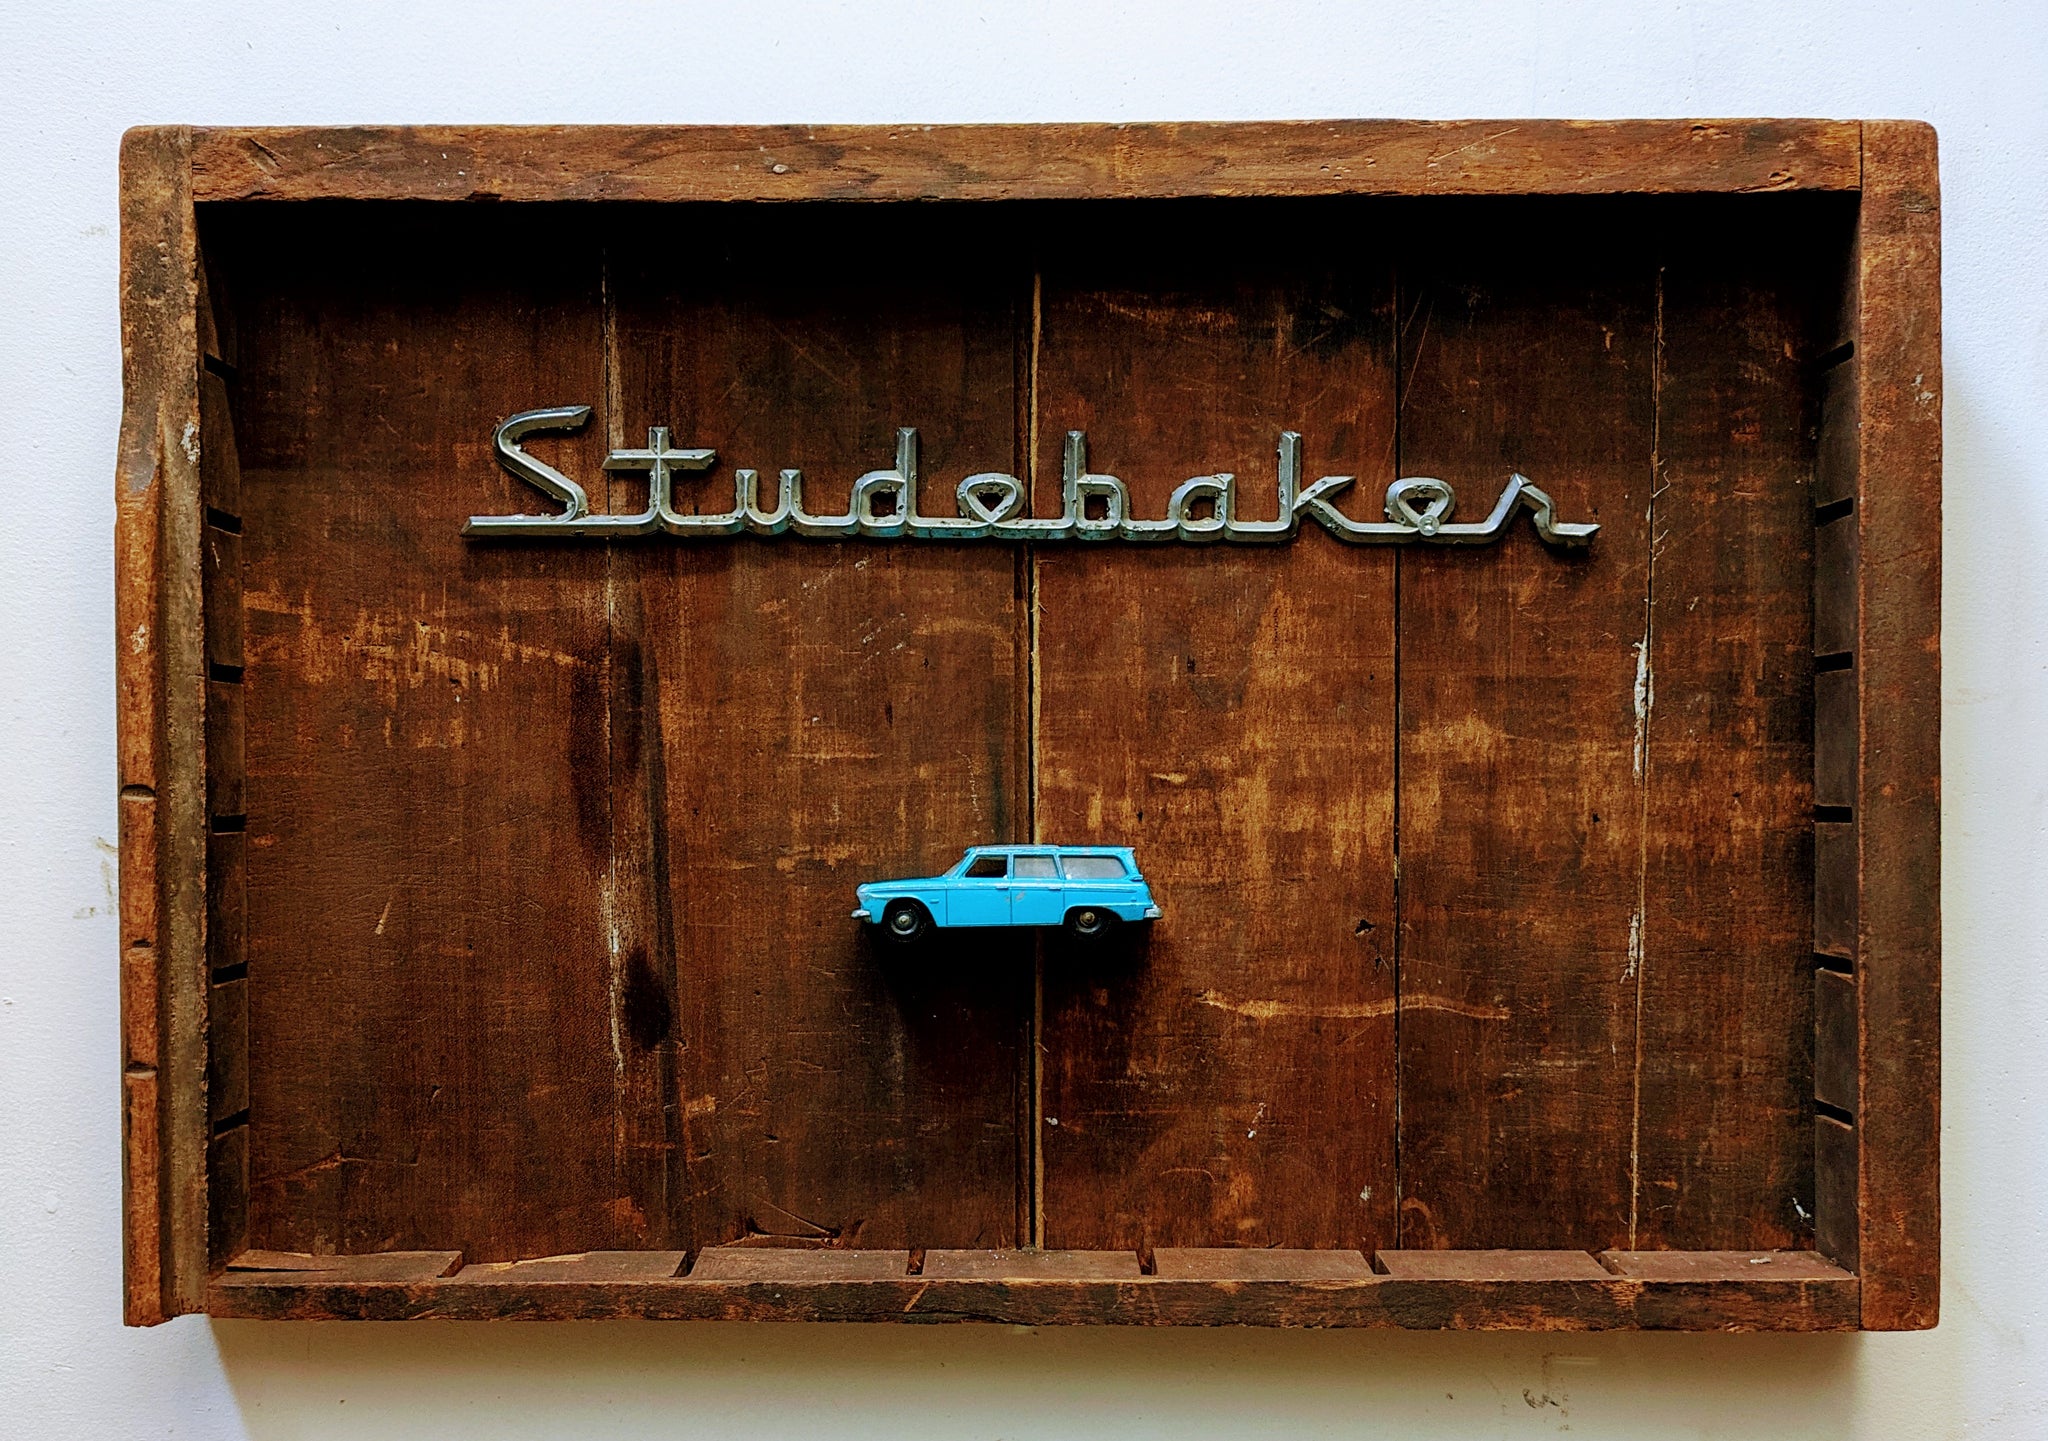 Studebaker #1